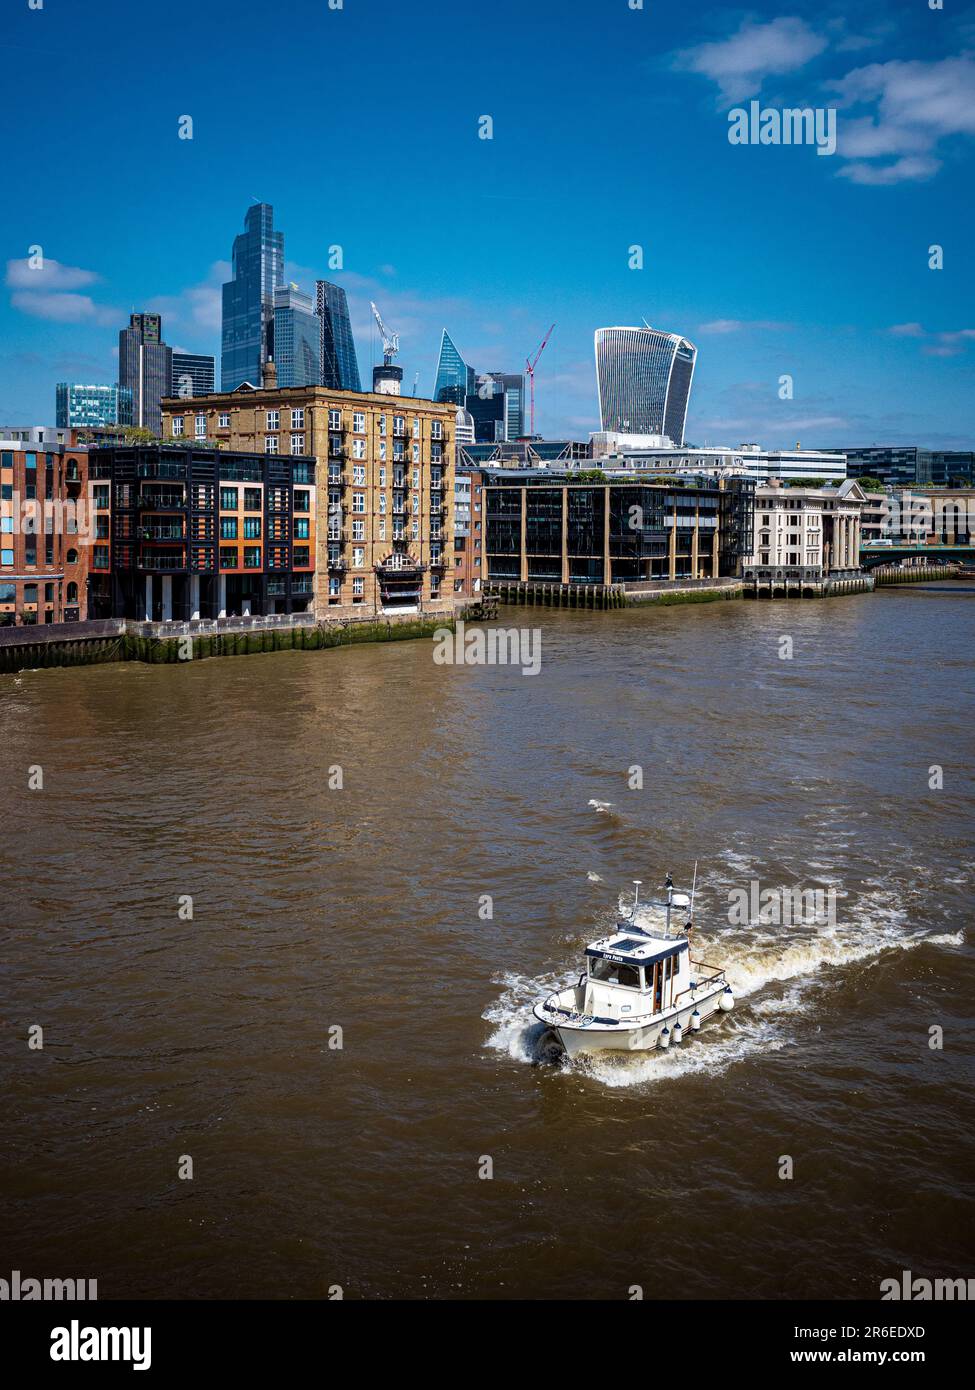 River Thames City of London - un petit bateau navigue sur la Tamise à travers le quartier financier de la City of London. Banque D'Images